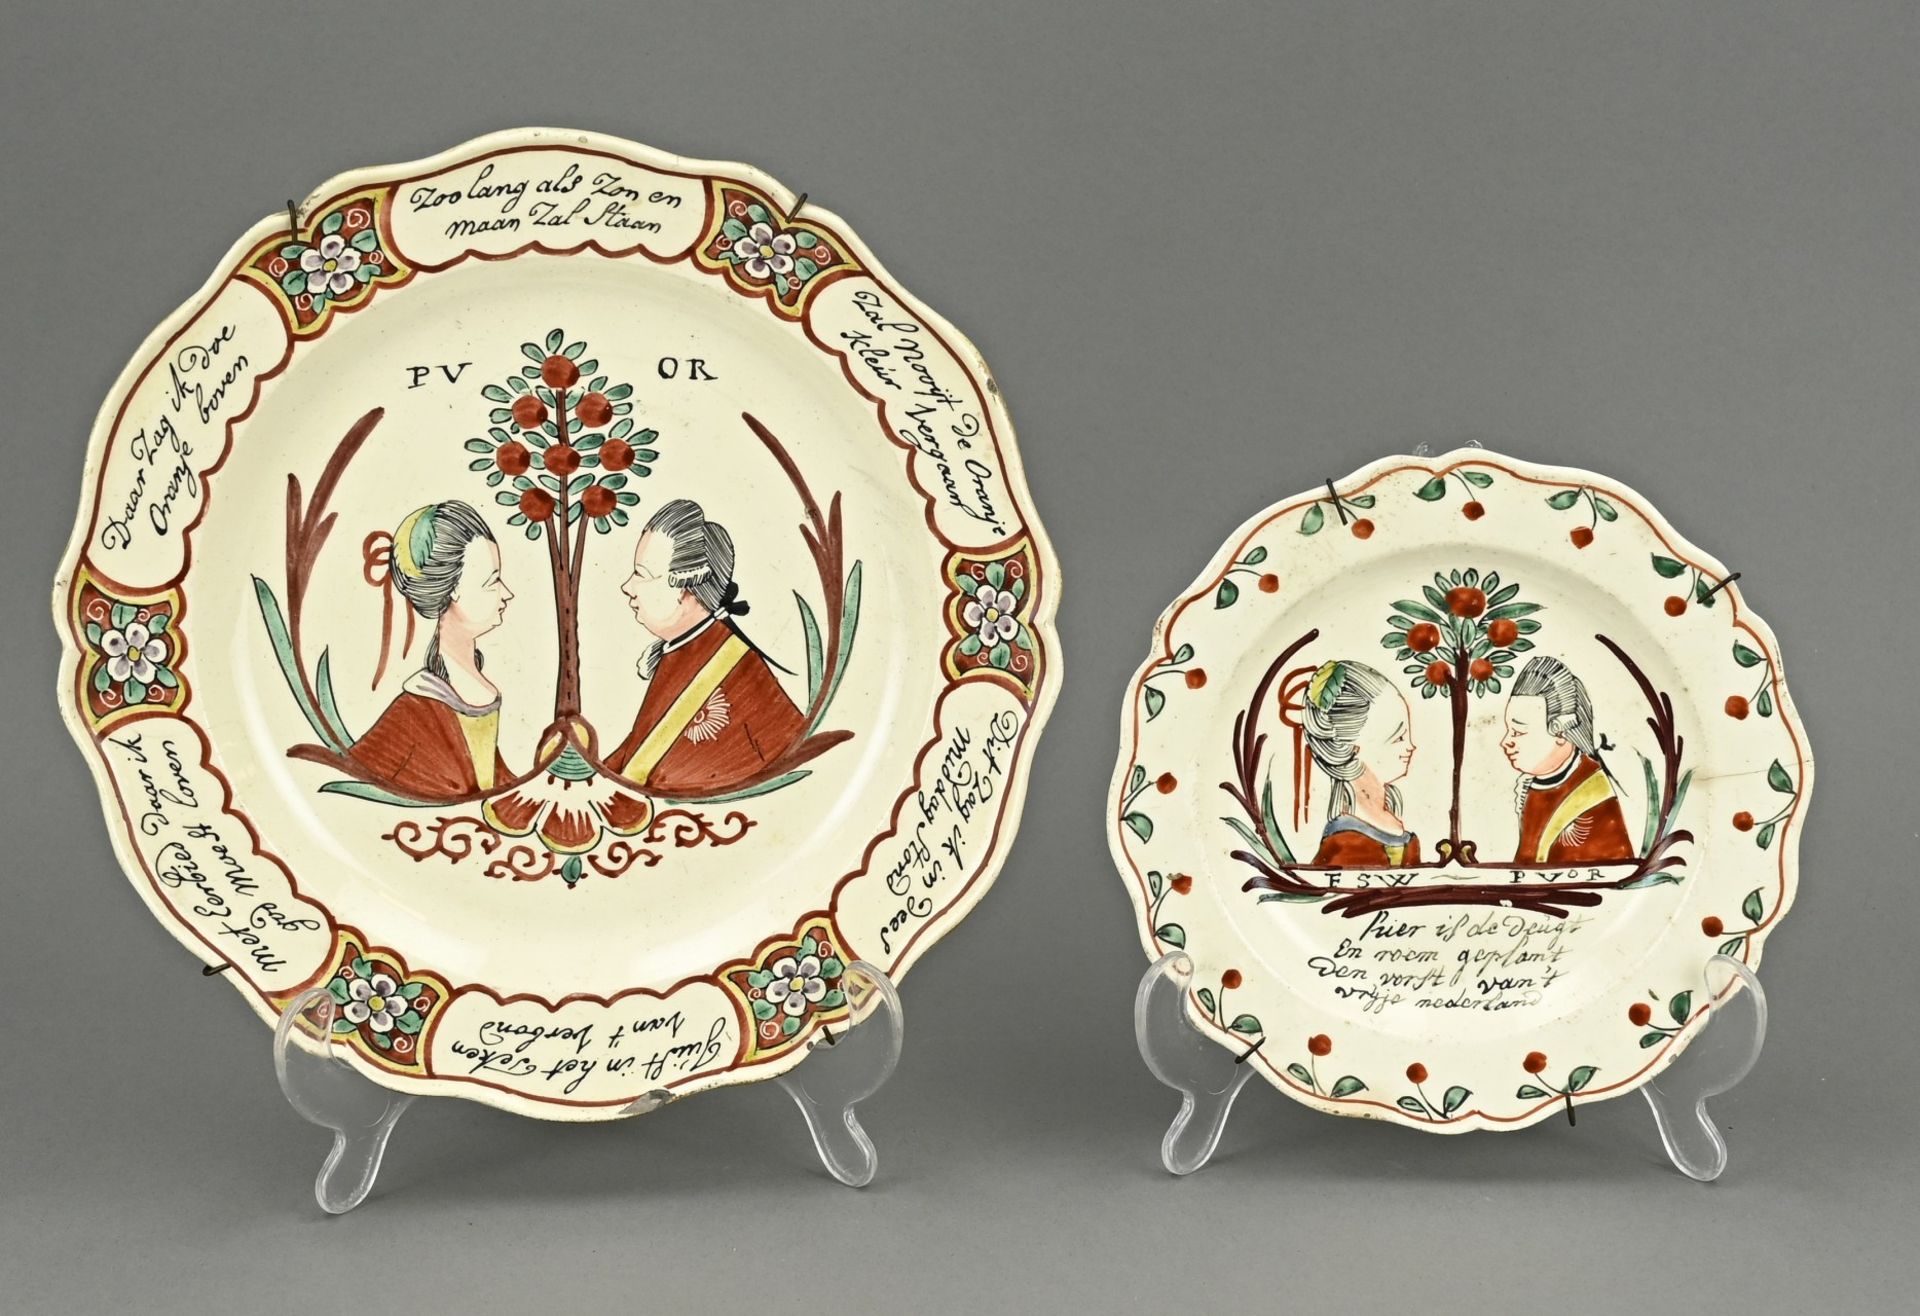 Two commemorative plates Ã˜ 17.5 - 25 cm.